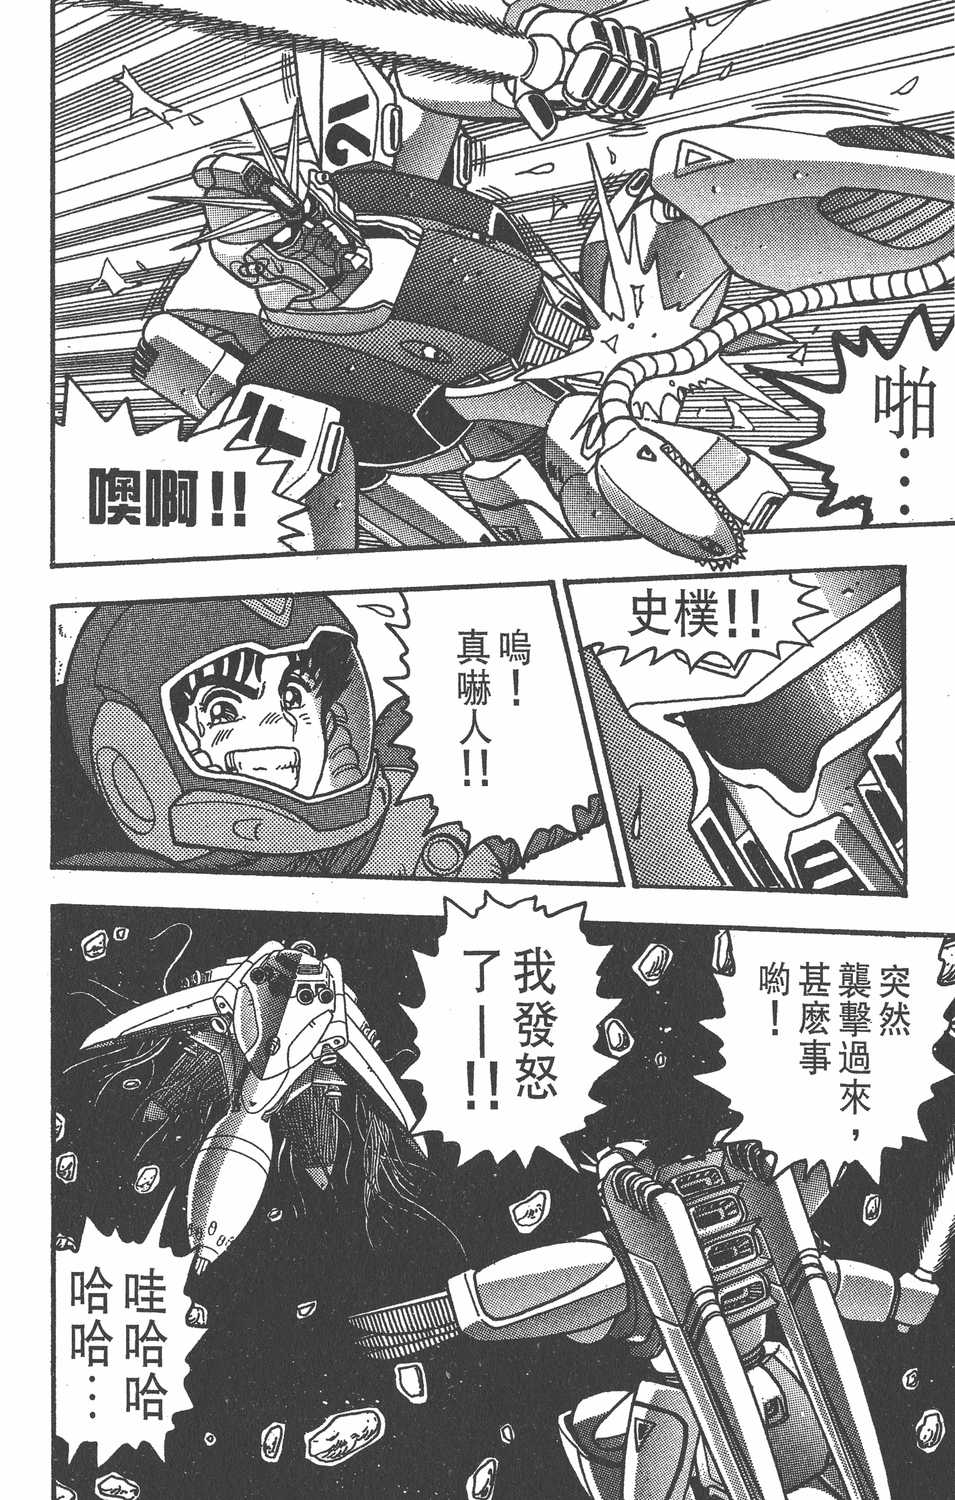 机动战士高达f91漫画单行本第1集 漫画db